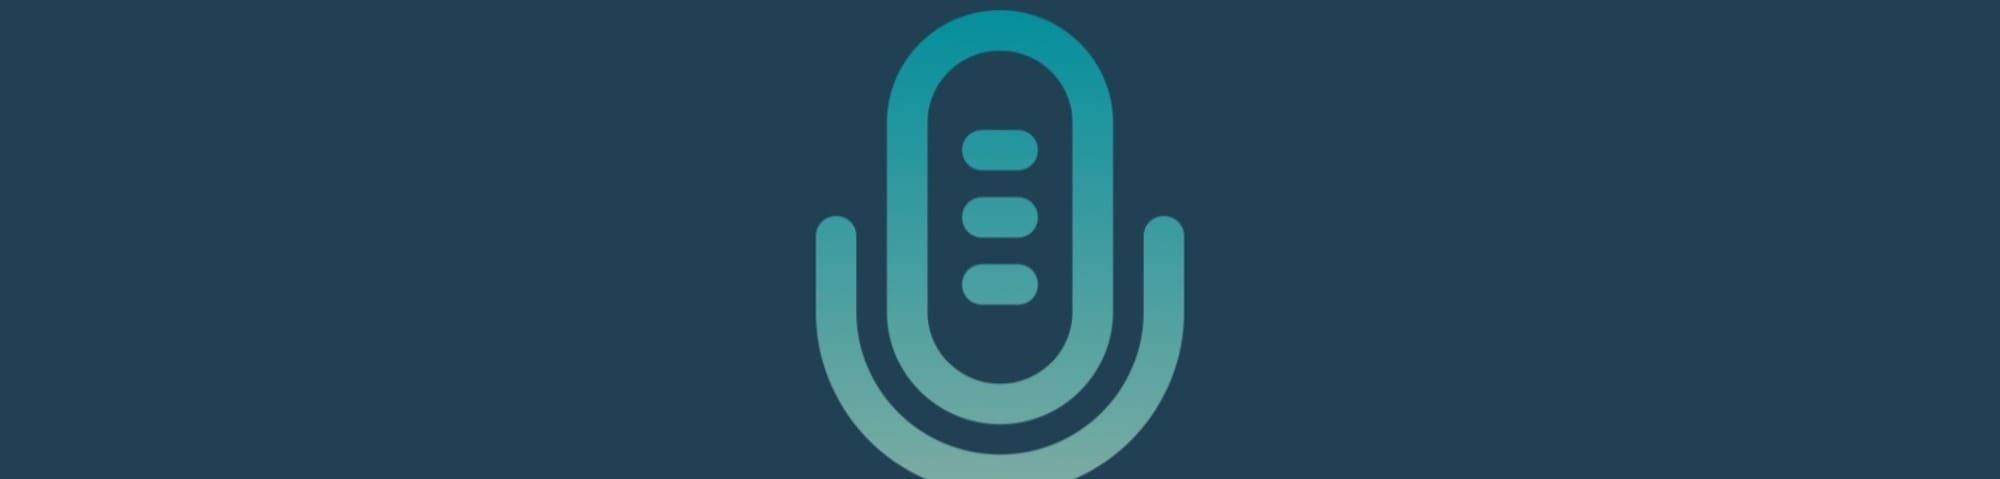 Oliver James & LinkedIn Podcast Key Takeaways 